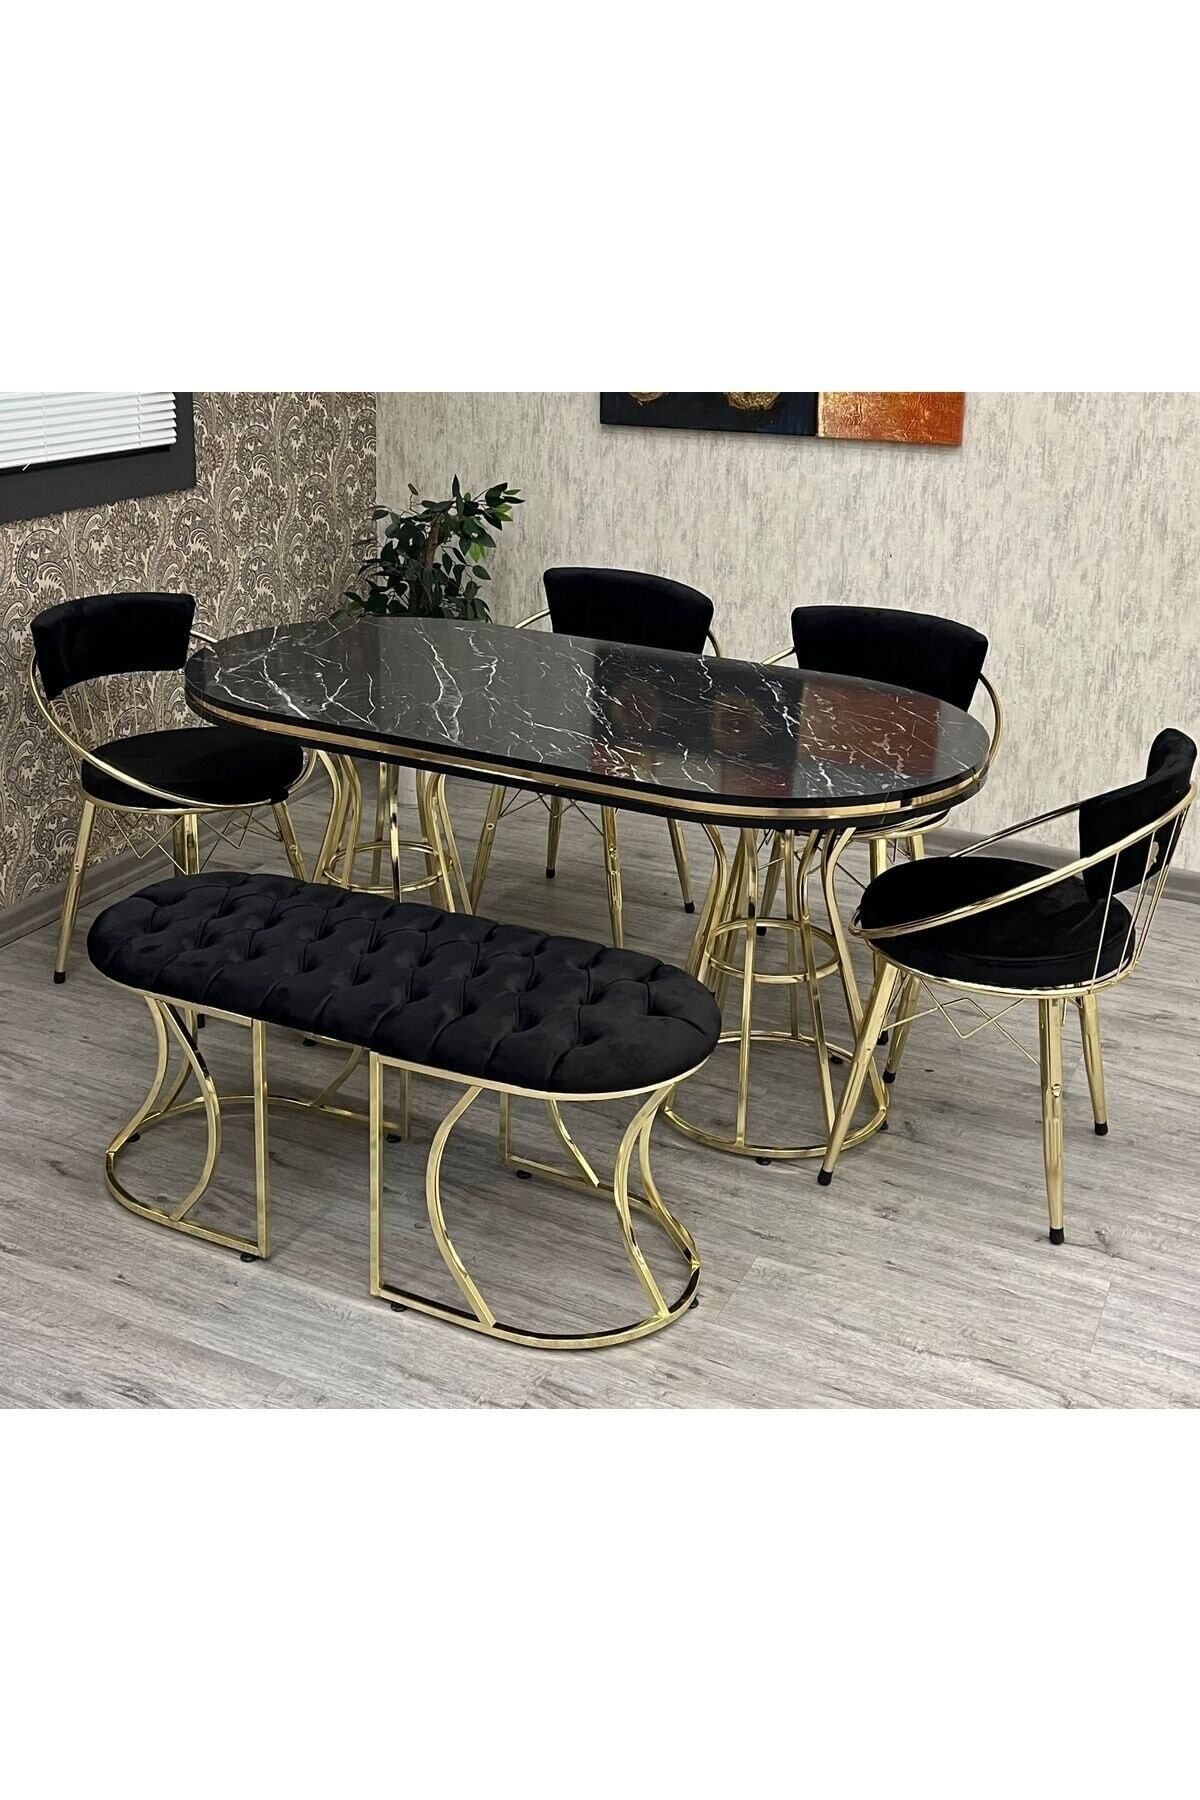 BY ORHAN GÜZEL Mutfak Masası Takımı, Salon Masası Takımı ,6 Kişilik Venüs Gold Salon Masası Takımı